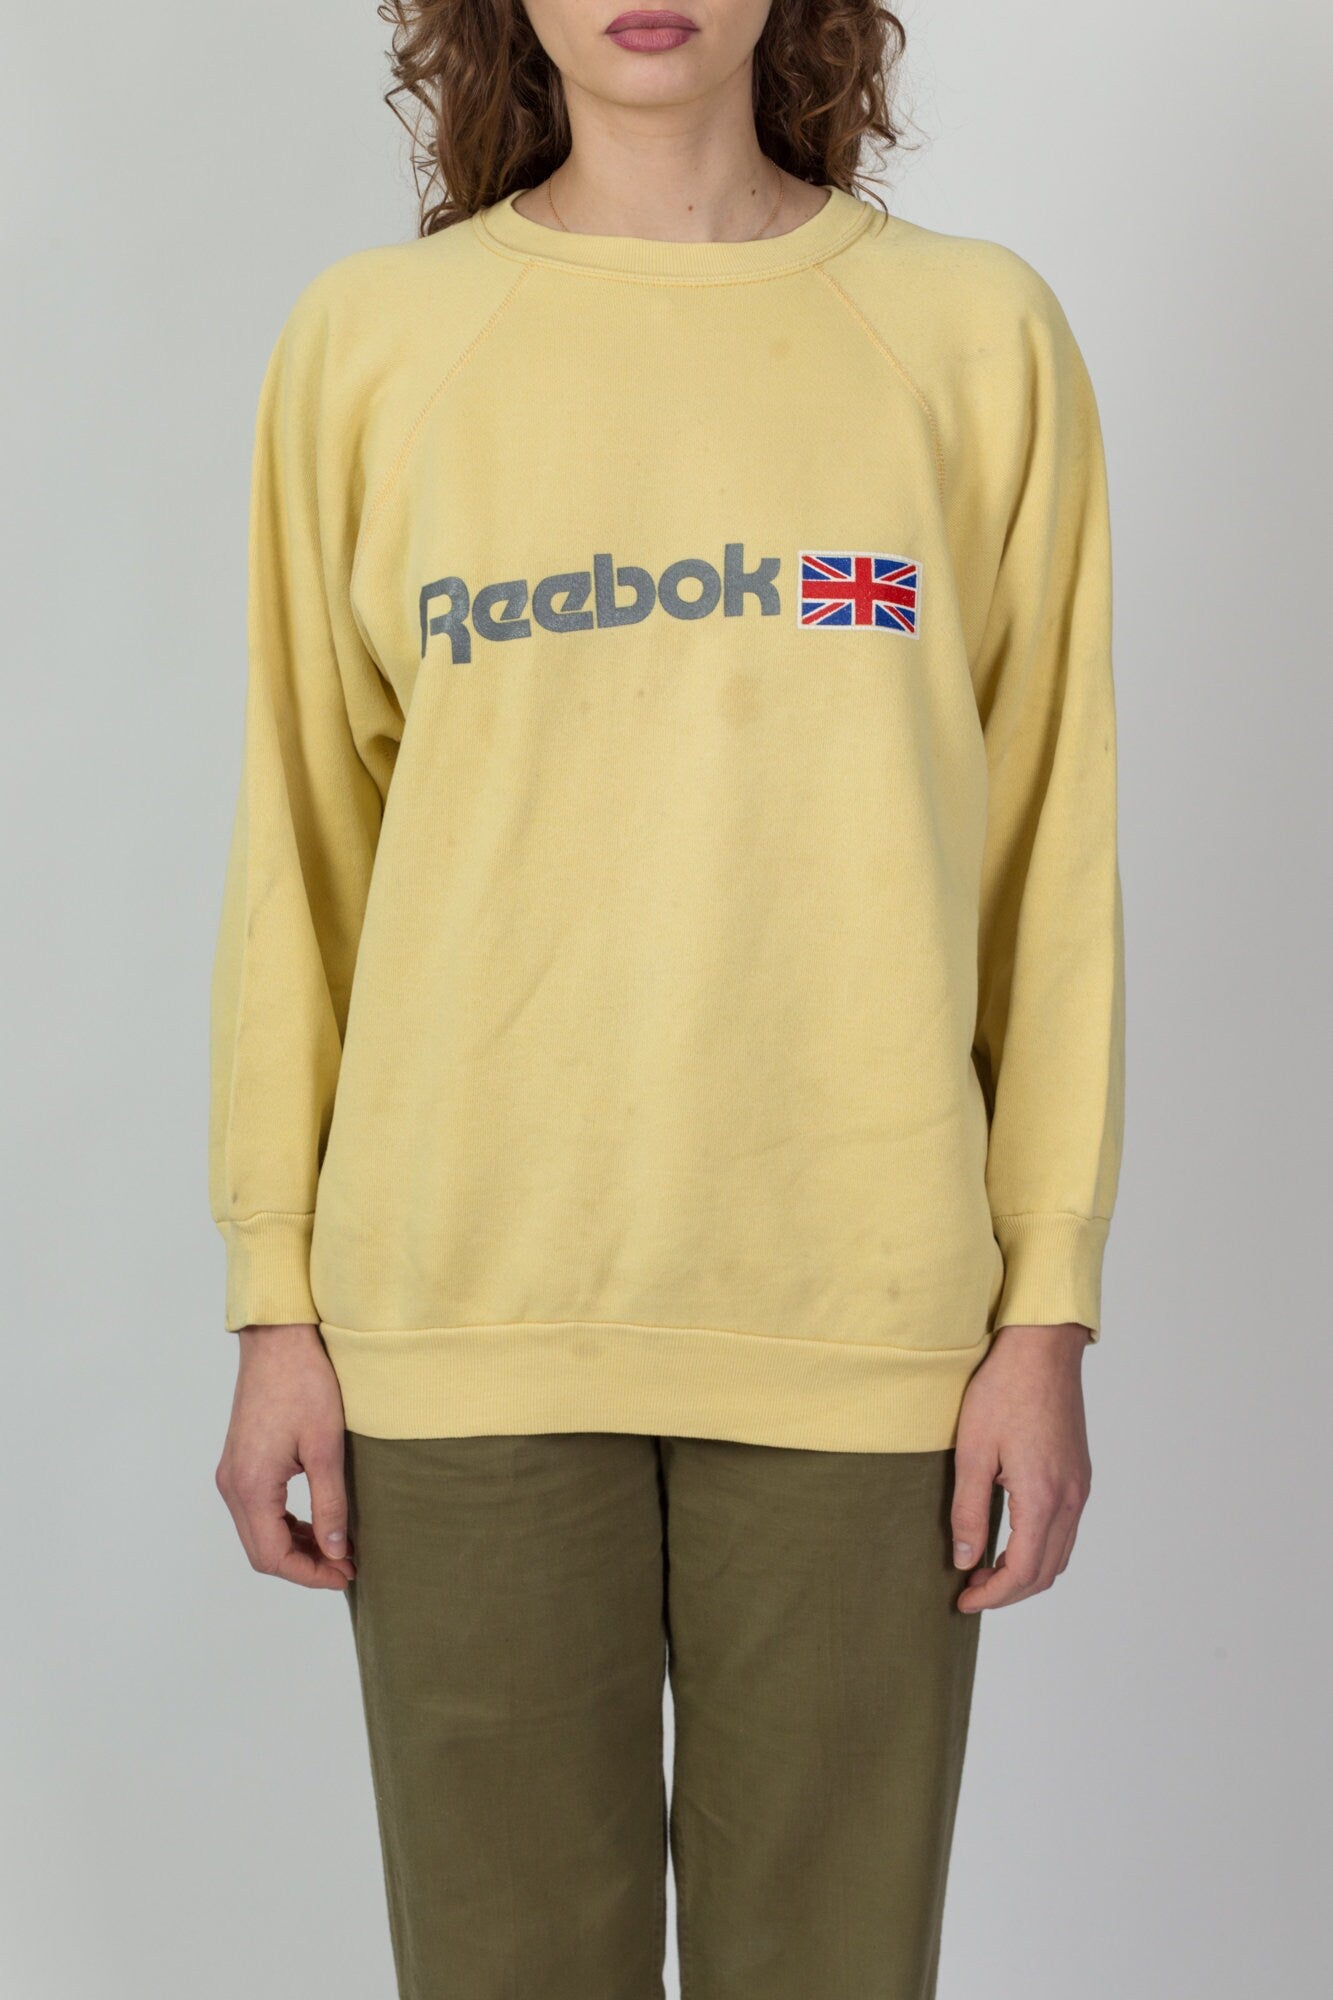 Vervelen Stuiteren morfine 90s Reebok Canary Yellow Sweatshirt - Men's Large Short, Women's XL –  Flying Apple Vintage